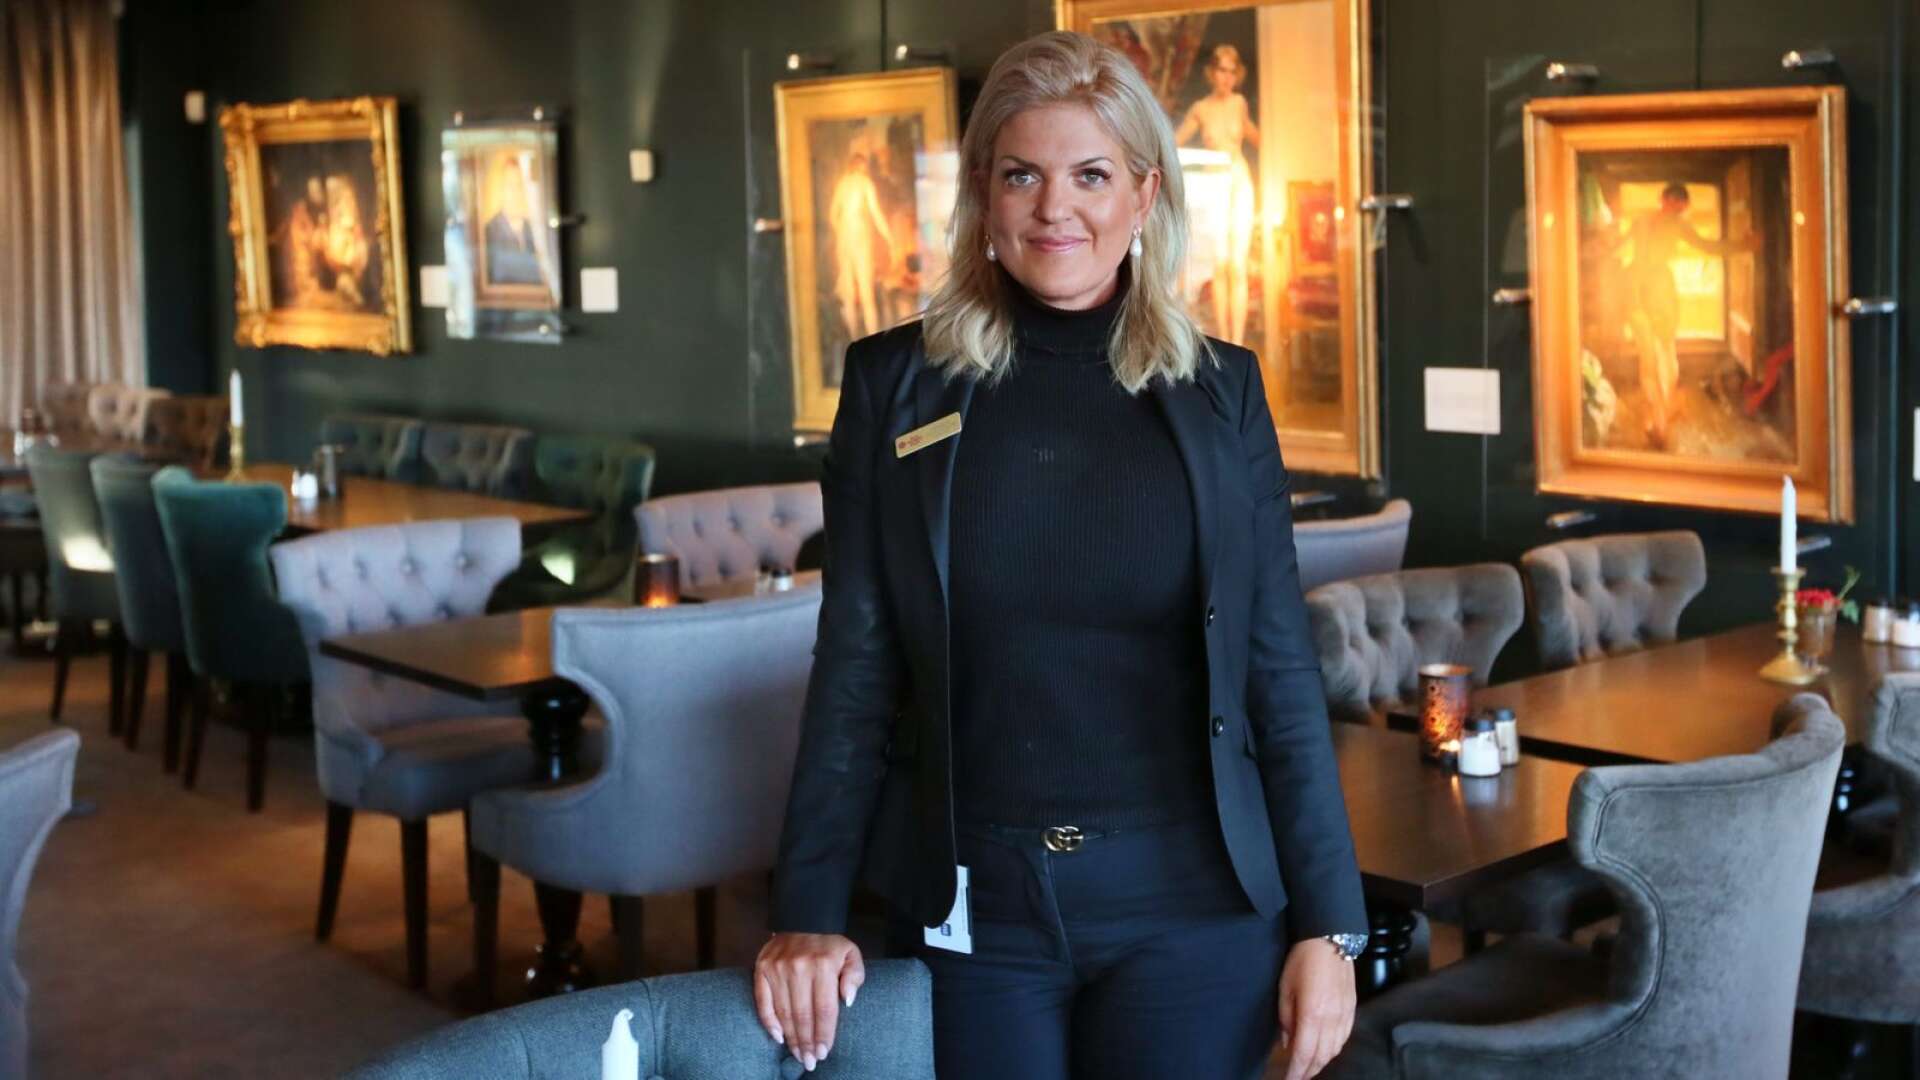 Mikaela Grundström är sedan i fjol vd för Jula hotell och konferens. Nu får hon ytterligare ett hotell att förvalta.